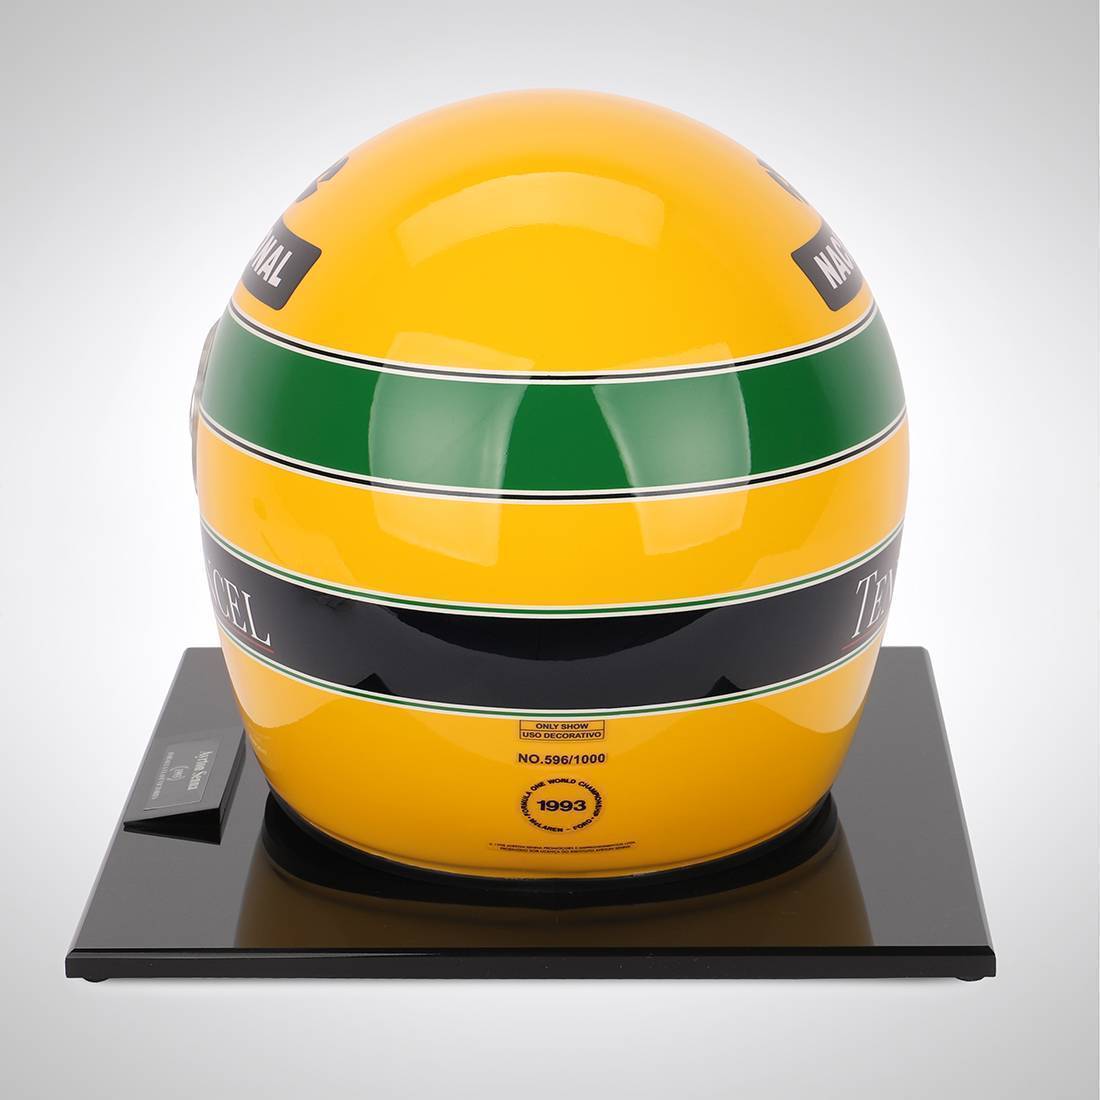 Ayrton Senna 1993 1:1 Official Promo Helmet